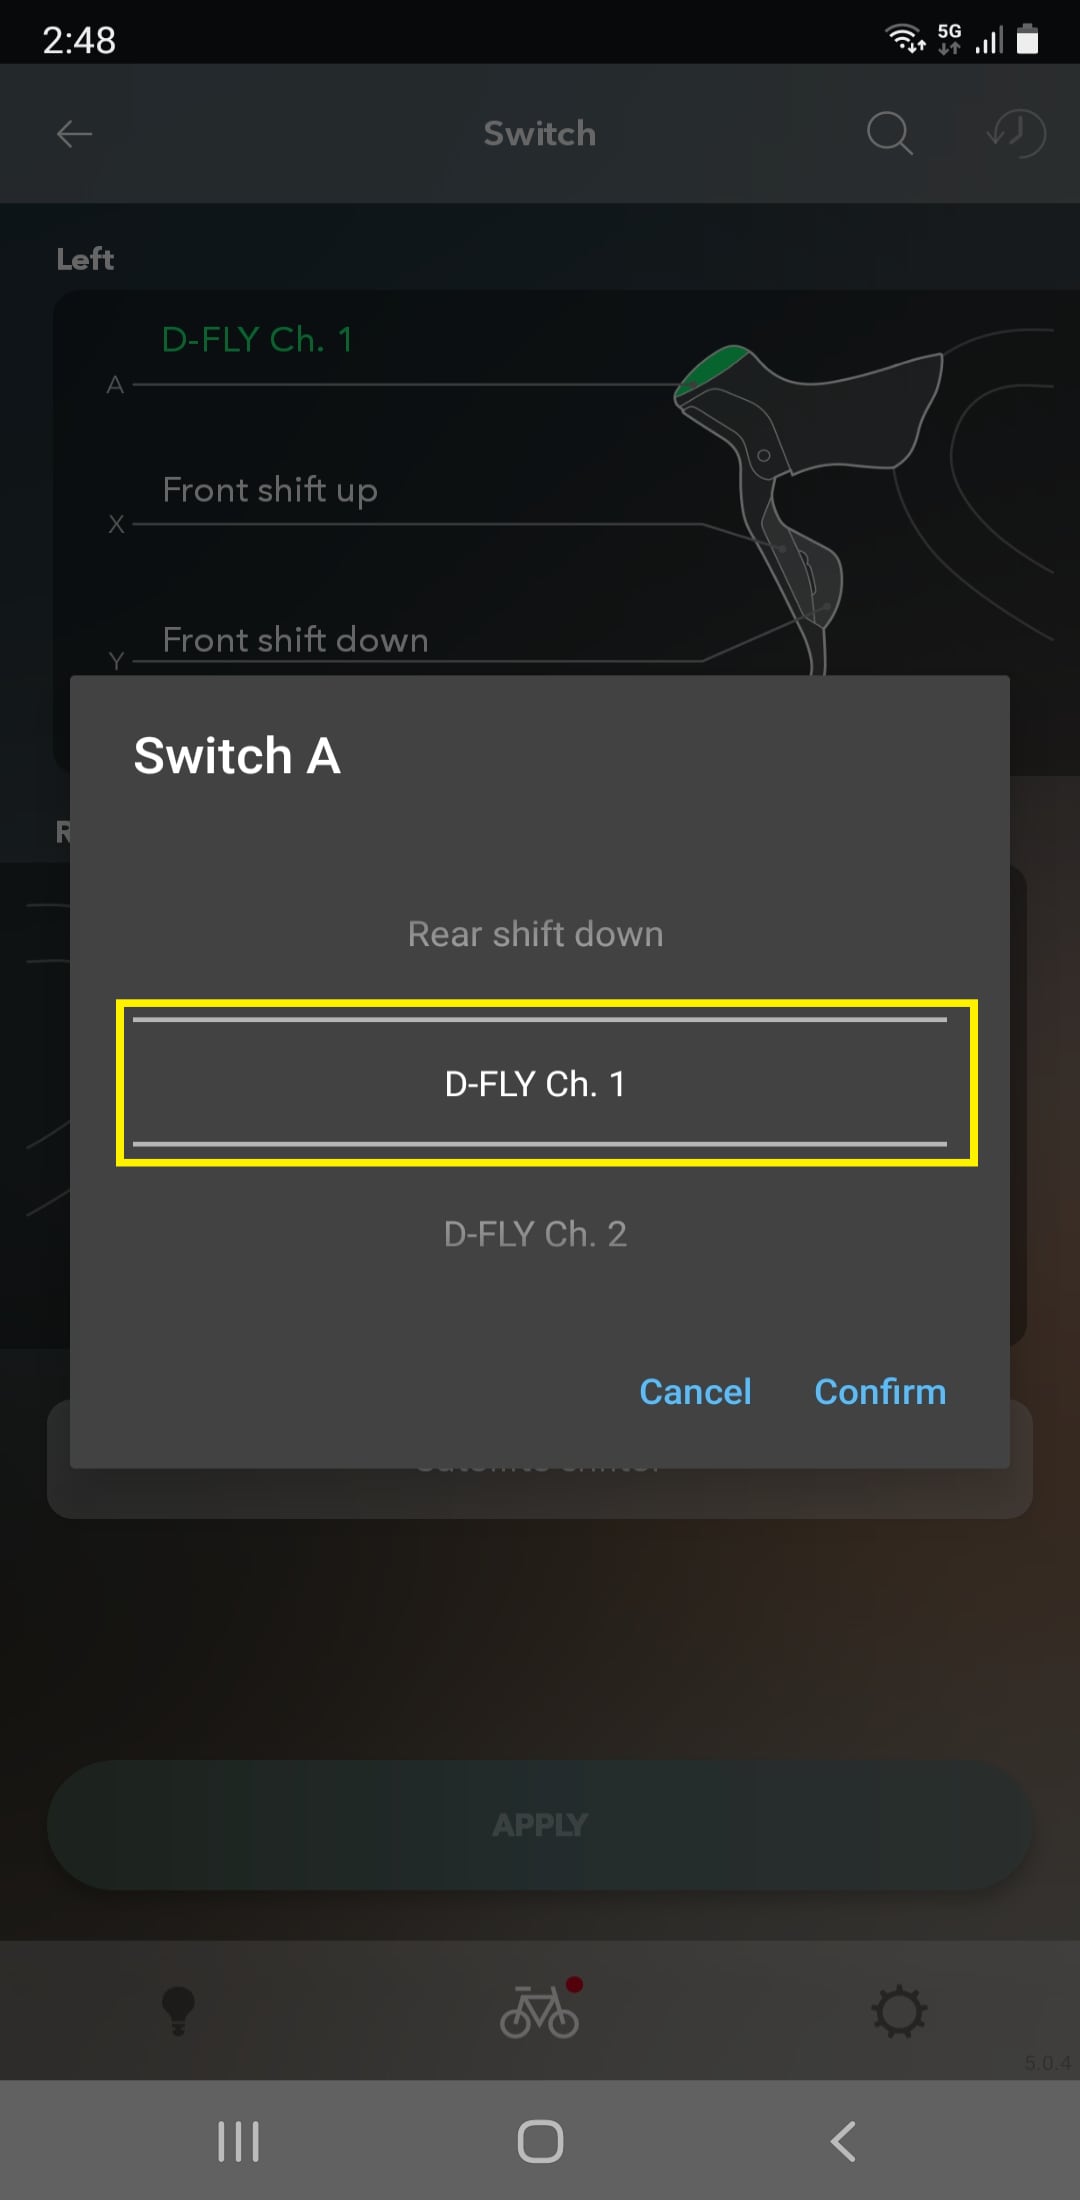 D-FLYチャンネル1から4の中から使用するチャンネルを選択します